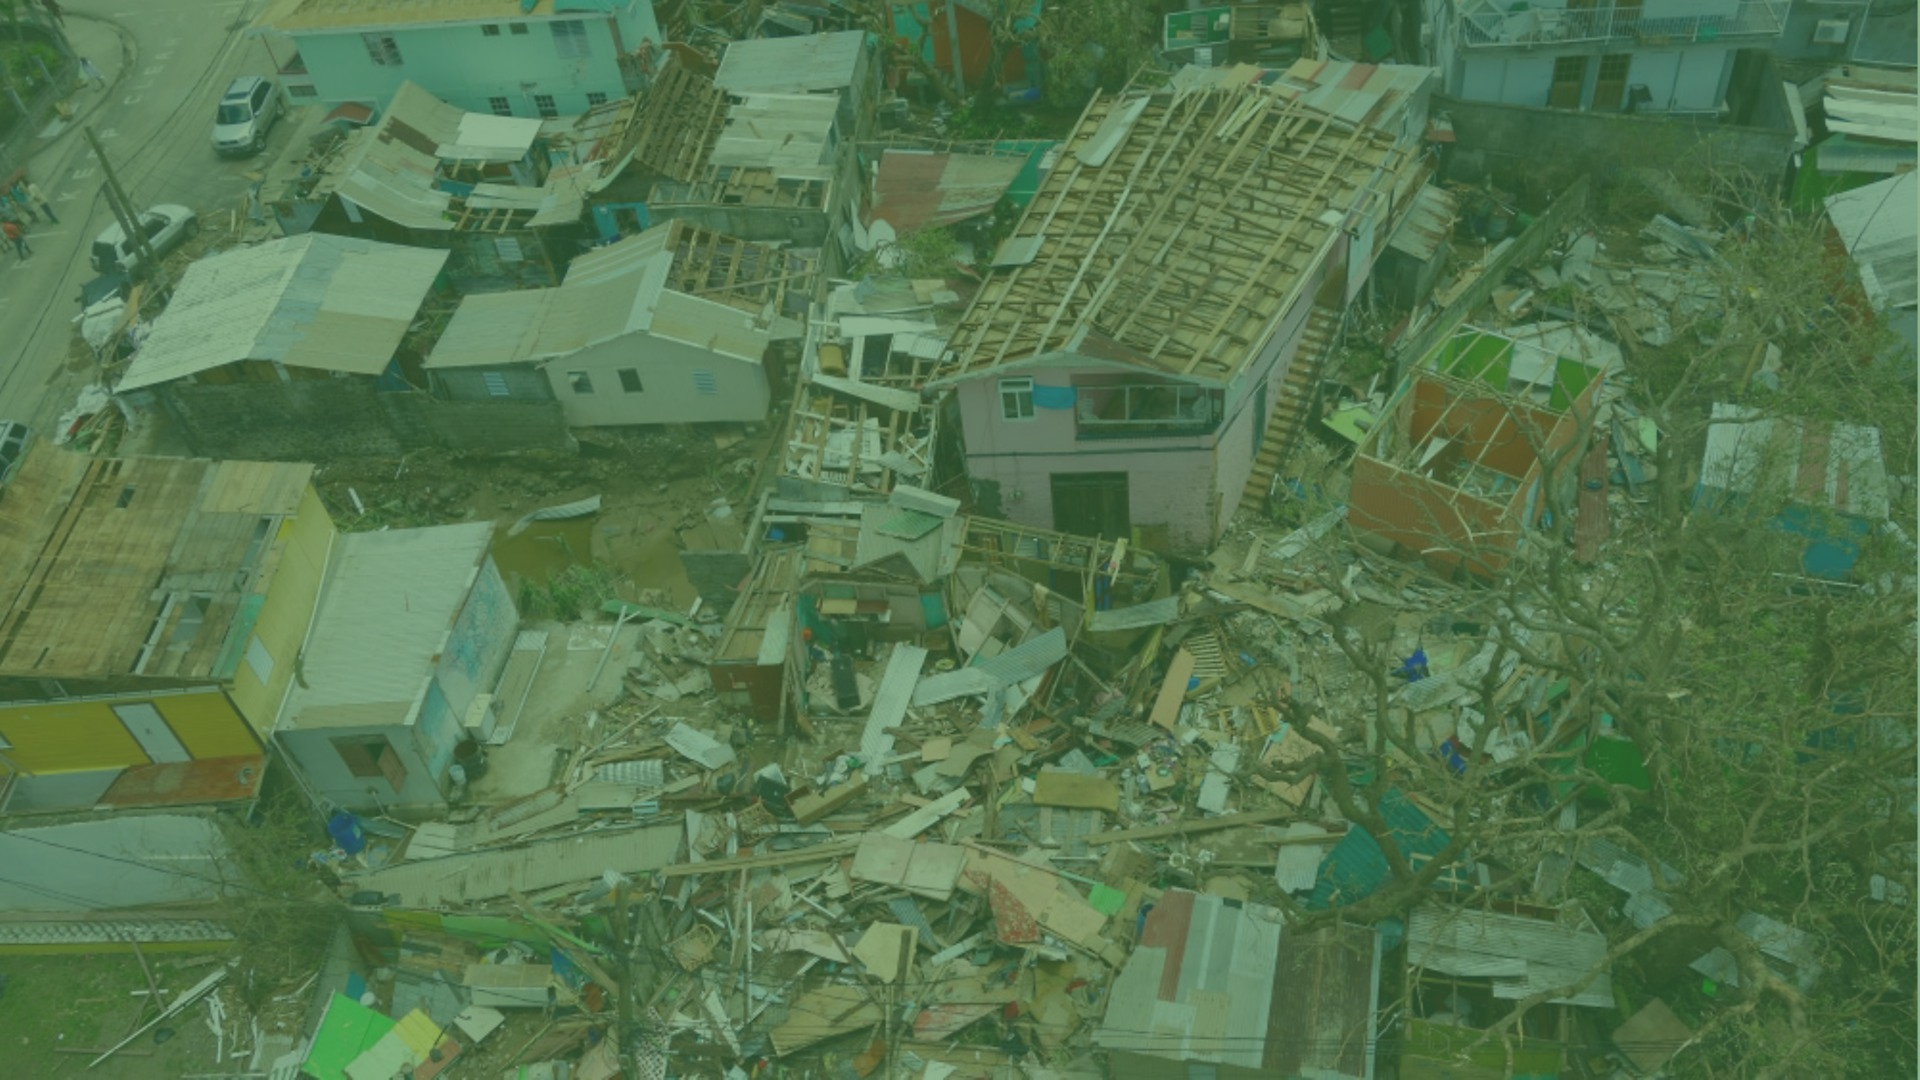 Sturmschäden auf der Karibikinsel Dominica nach dem Hurrikan "Maria" im September 2017